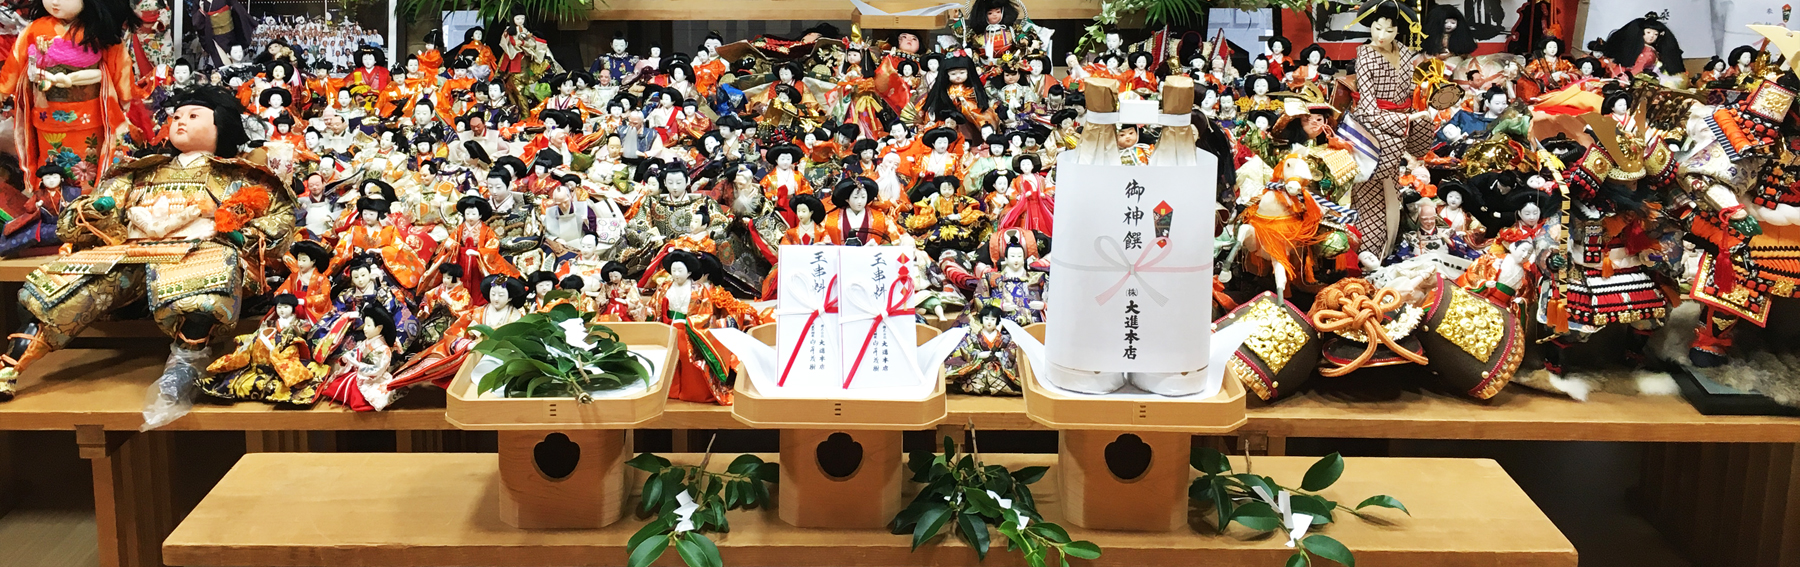 人形供養・道具類の処分（雛人形・五月人形・日本人形など）： 進物の大進